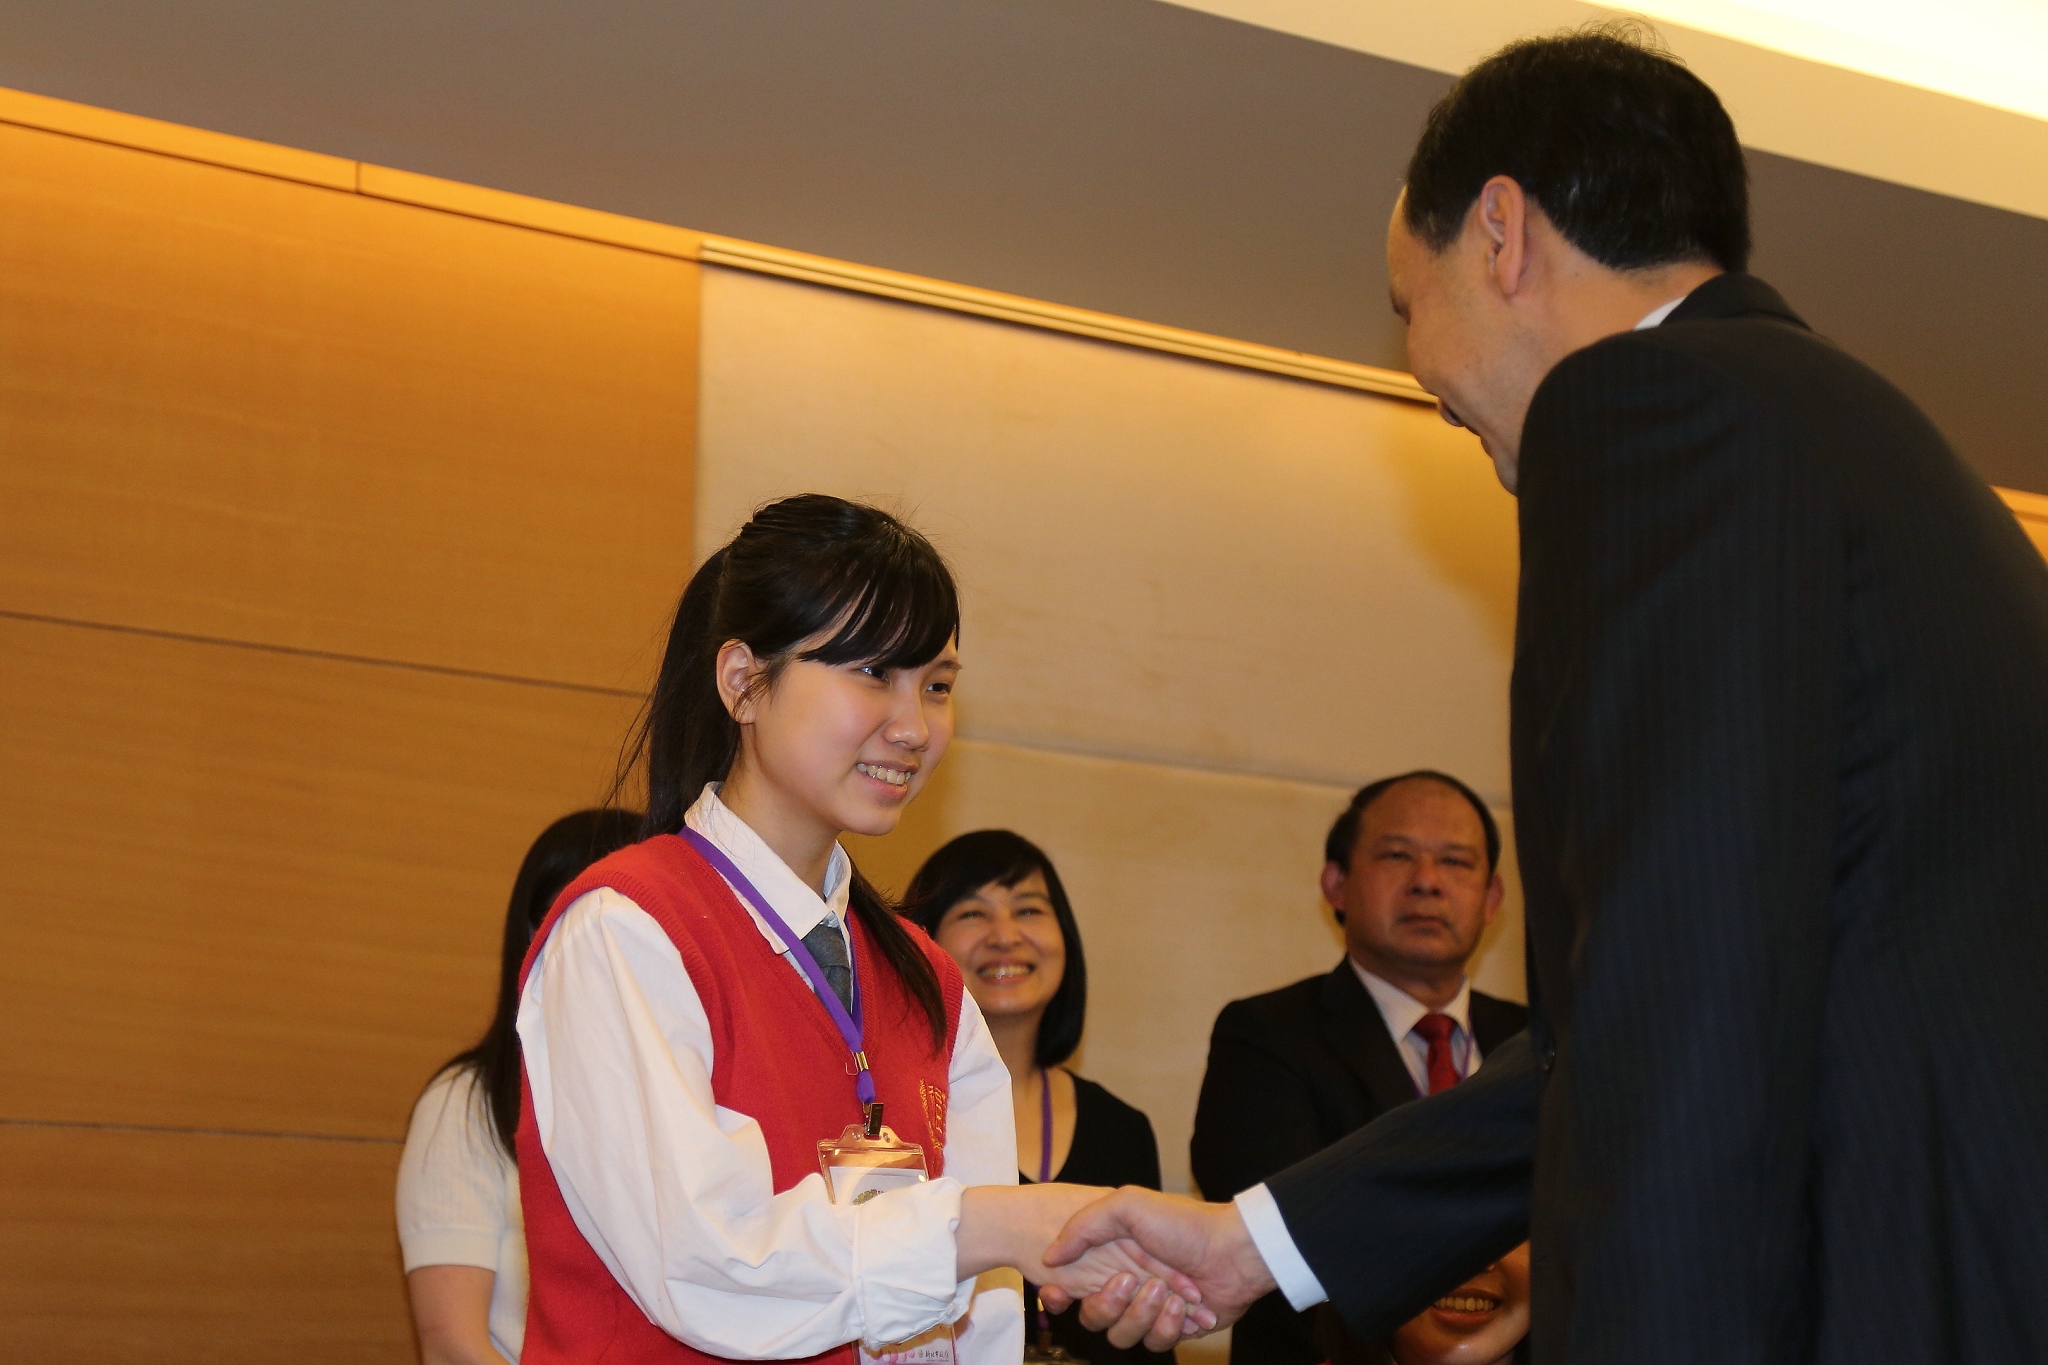 朱市長表揚8位「保德信青少年志工菁英獎」
